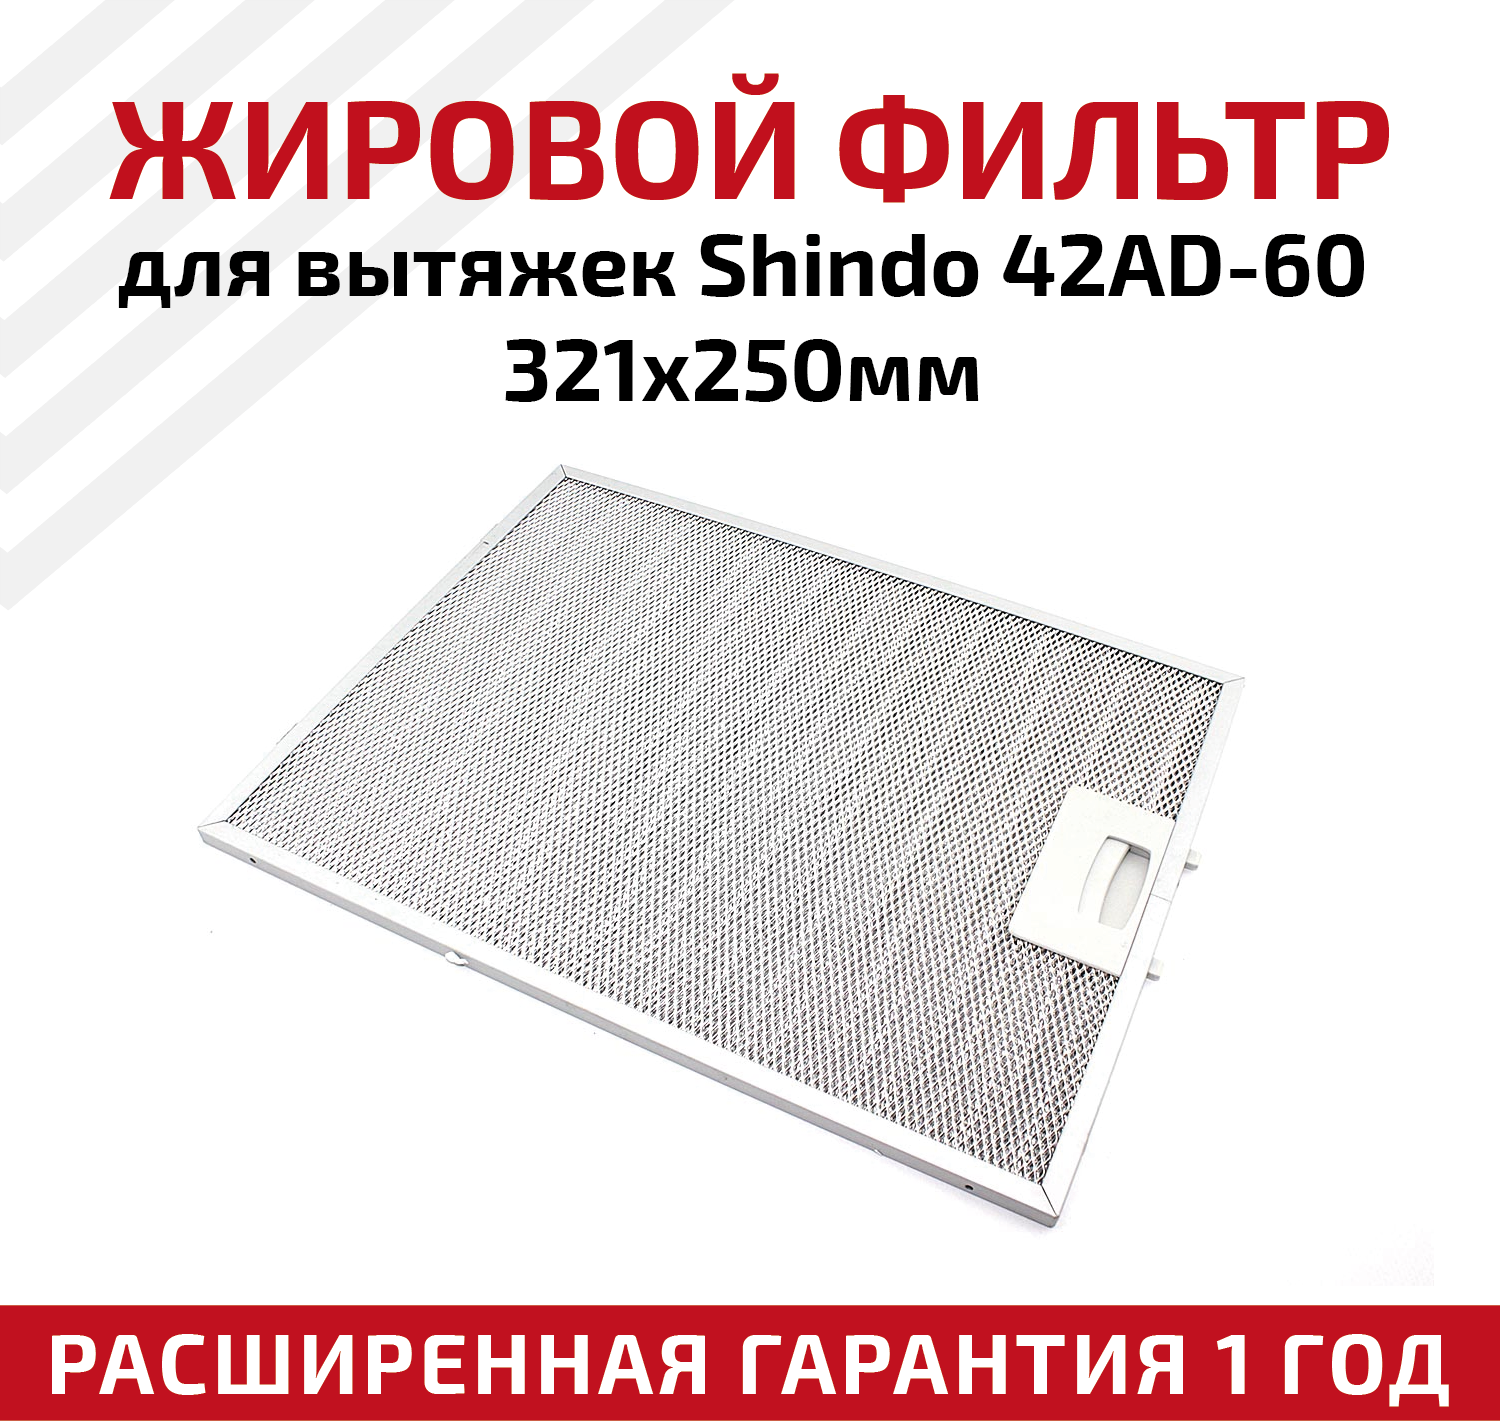 Жировой фильтр (кассета) алюминиевый (металлический) рамочный 42AD-60 для вытяжек Shindo многоразовый 321х250мм